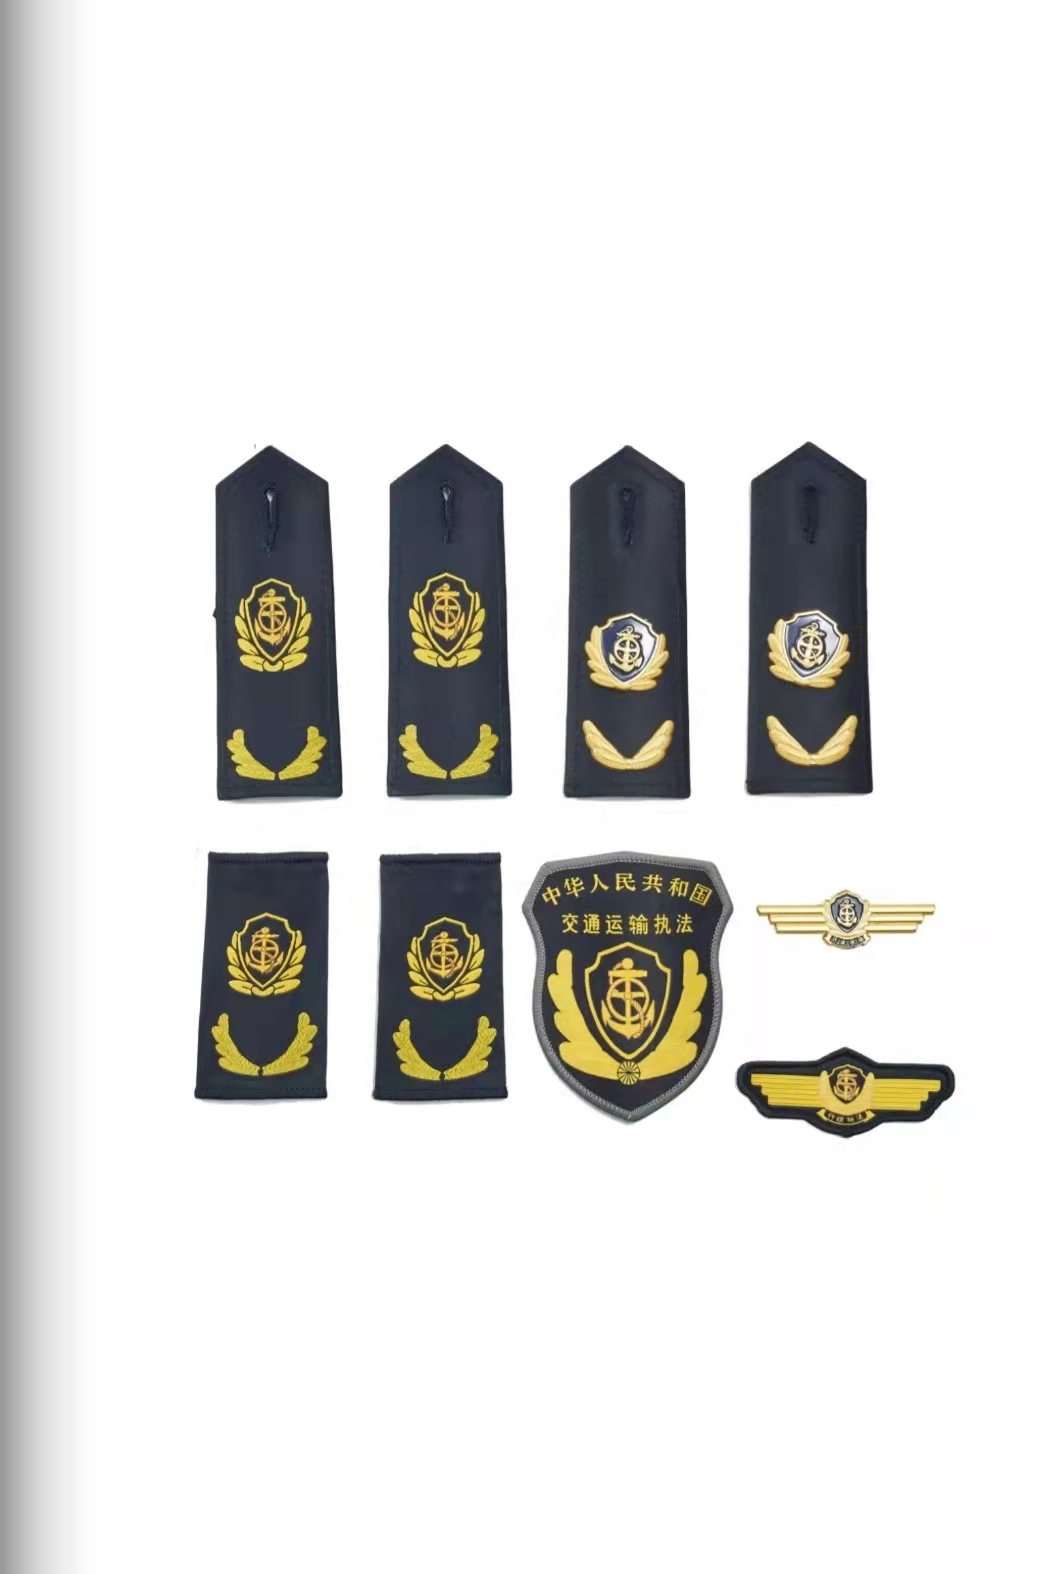 哈尔滨六部门统一交通运输执法服装标志